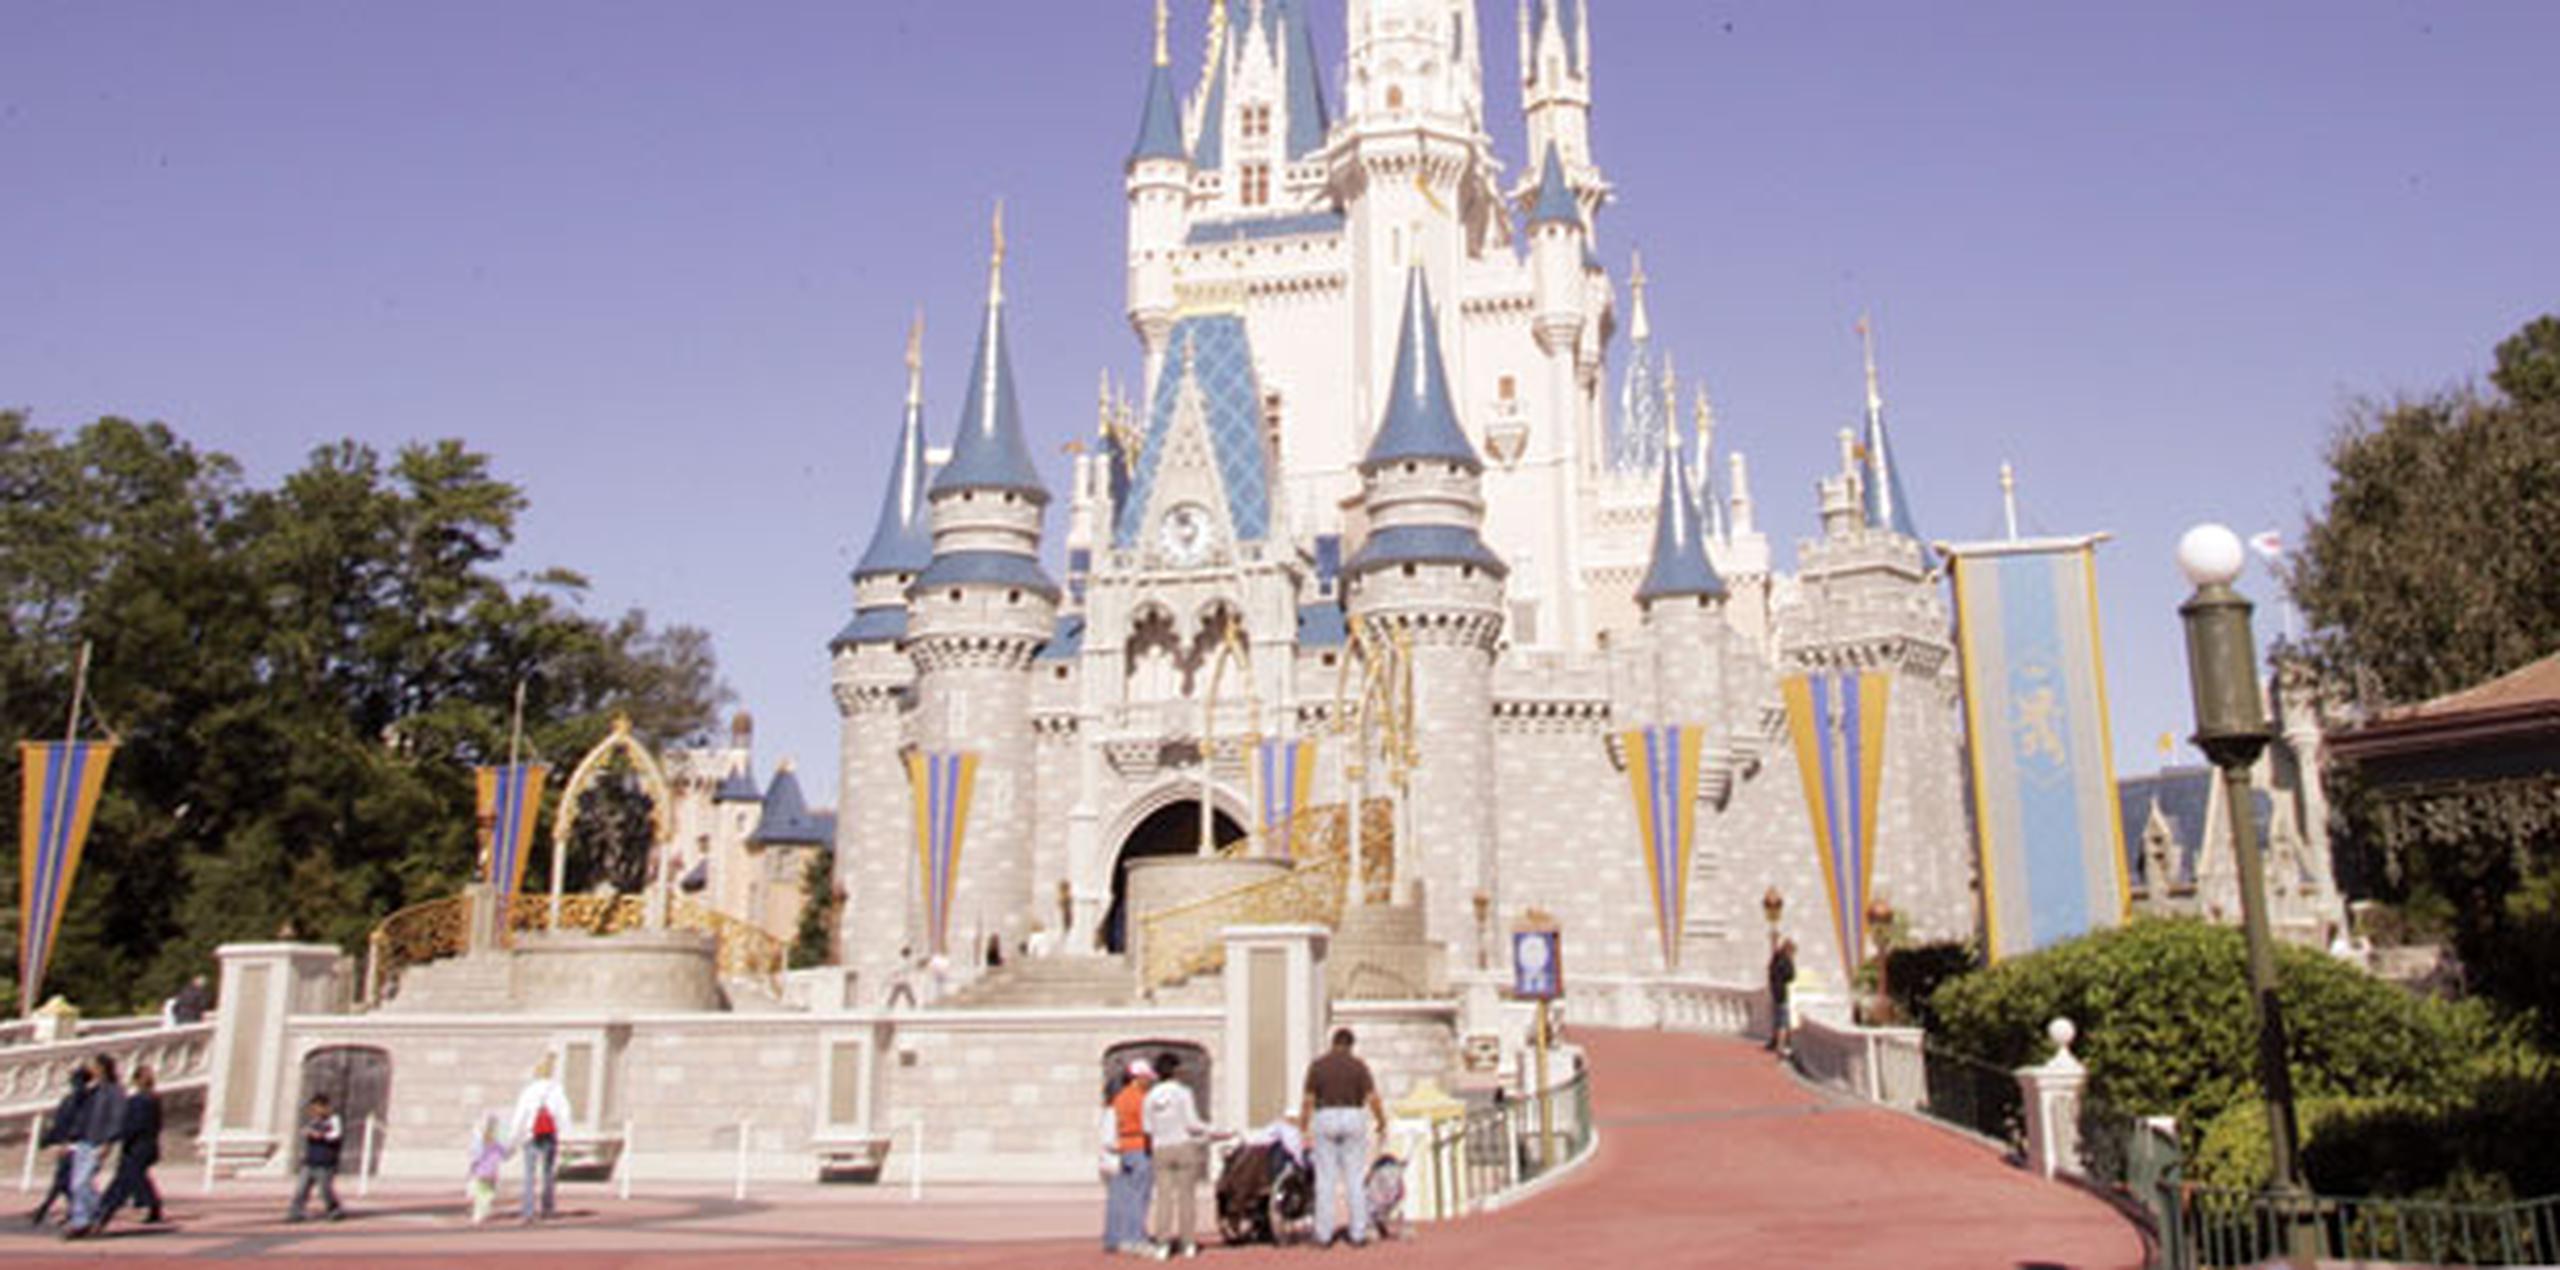 Disney ha seguido viendo un fuerte crecimiento de la asistencia a sus parques temáticos y resorts. (Archivo)